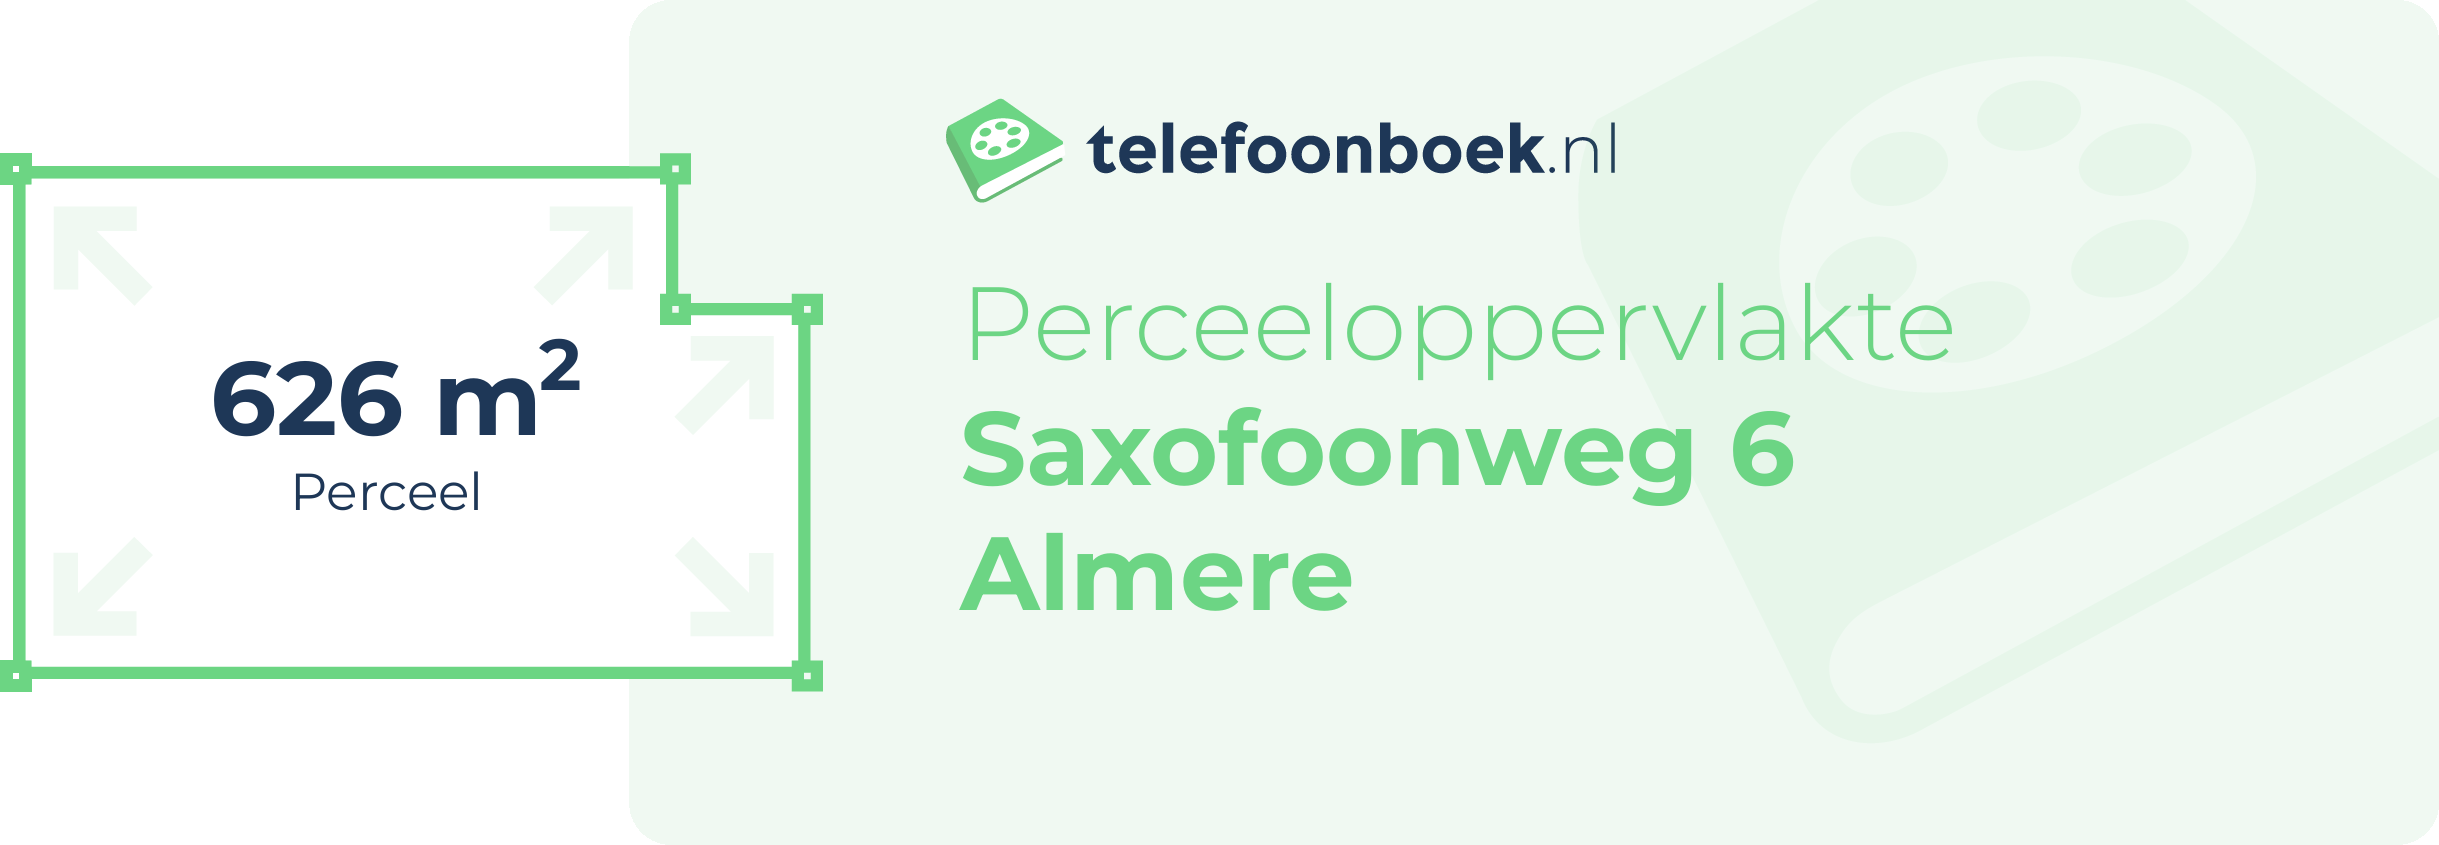 Perceeloppervlakte Saxofoonweg 6 Almere